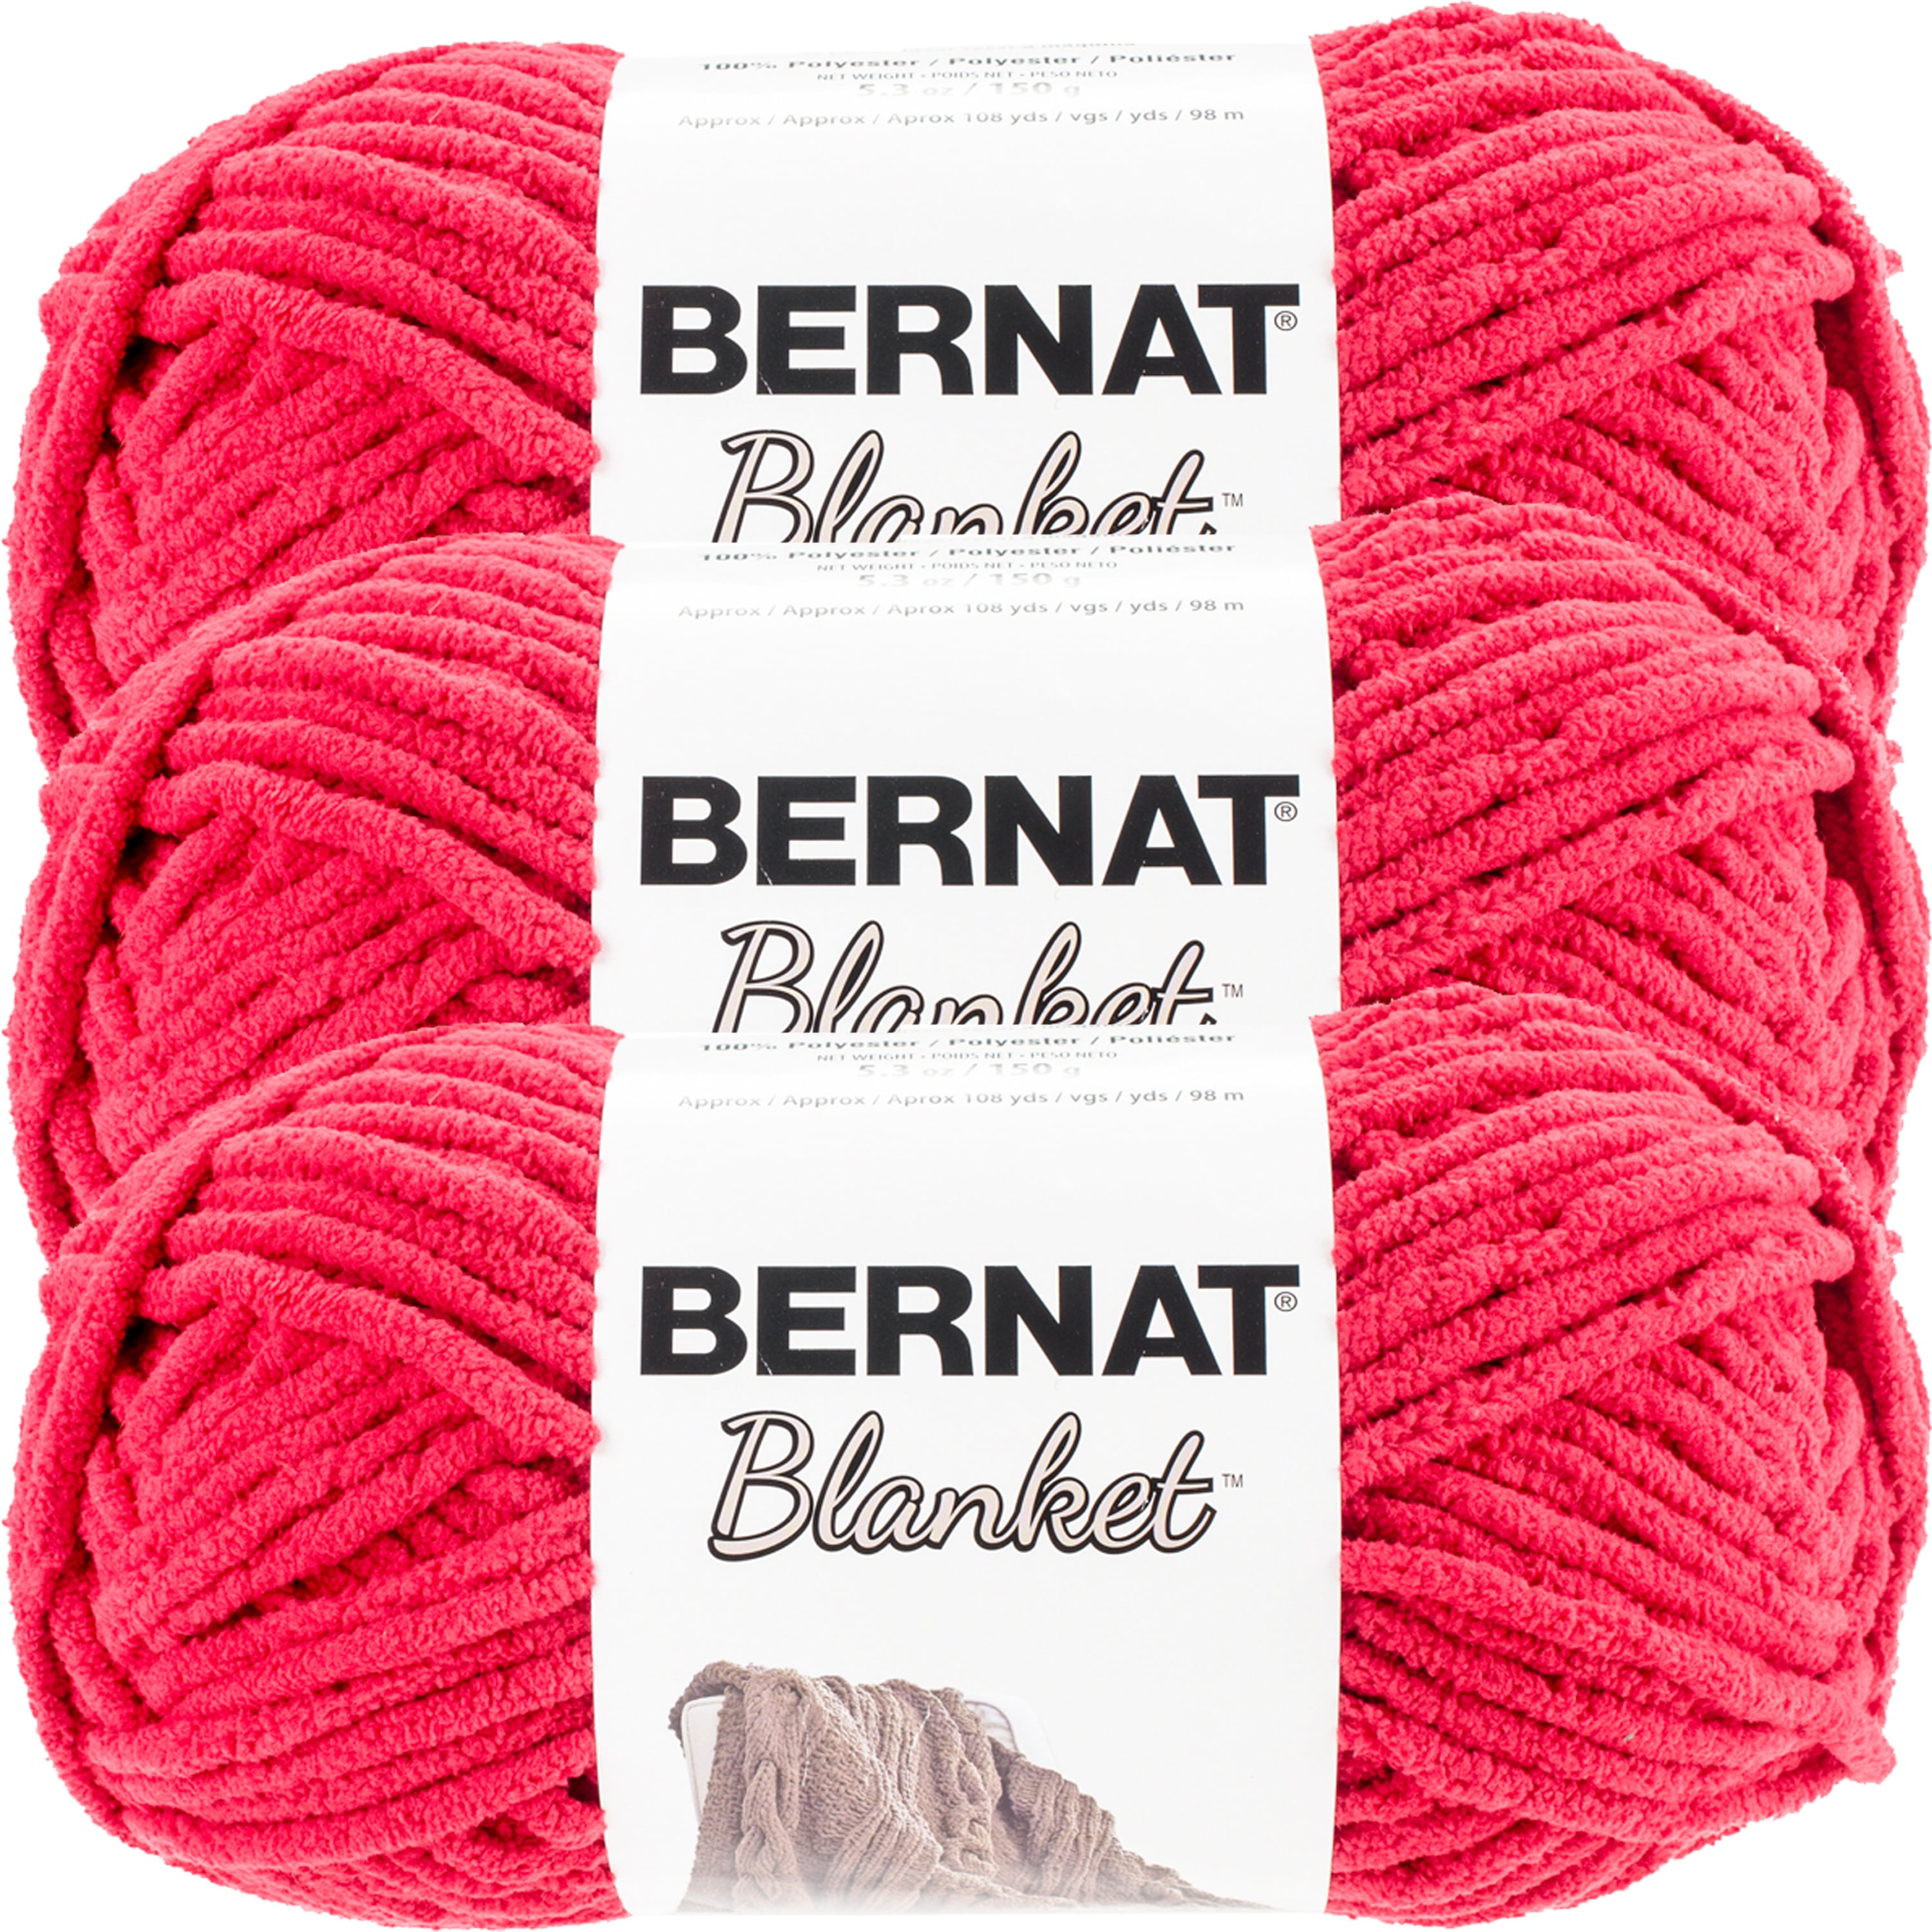 Yarn Bernat Blanket Yarn Cranberry 5.3 Oz 150g 108 